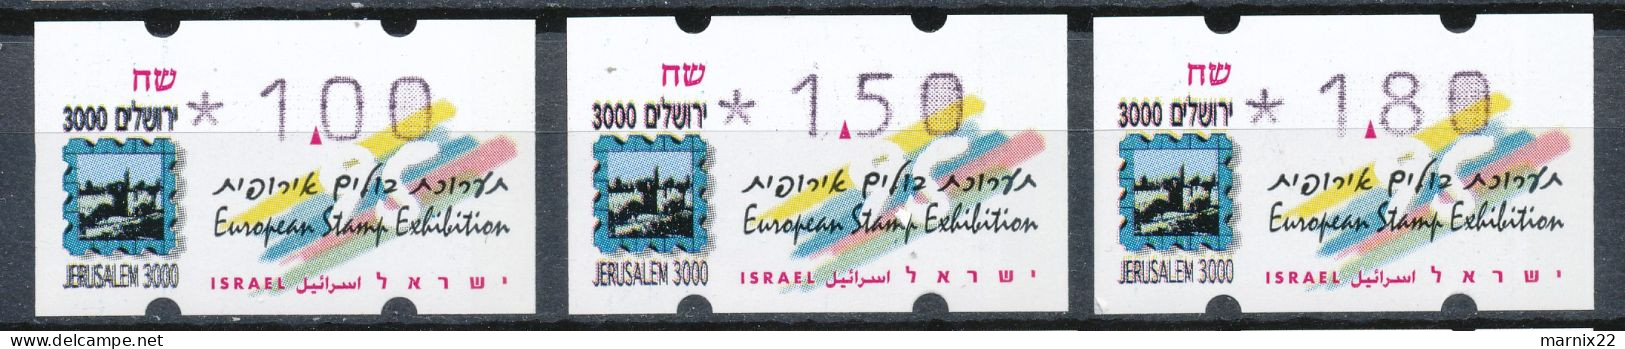 ISRAEL 1995-1998 - FRAMA LABELS - 9 DIFFERENT SETS (30 Labels Together)                                            Hk2 - Franking Labels